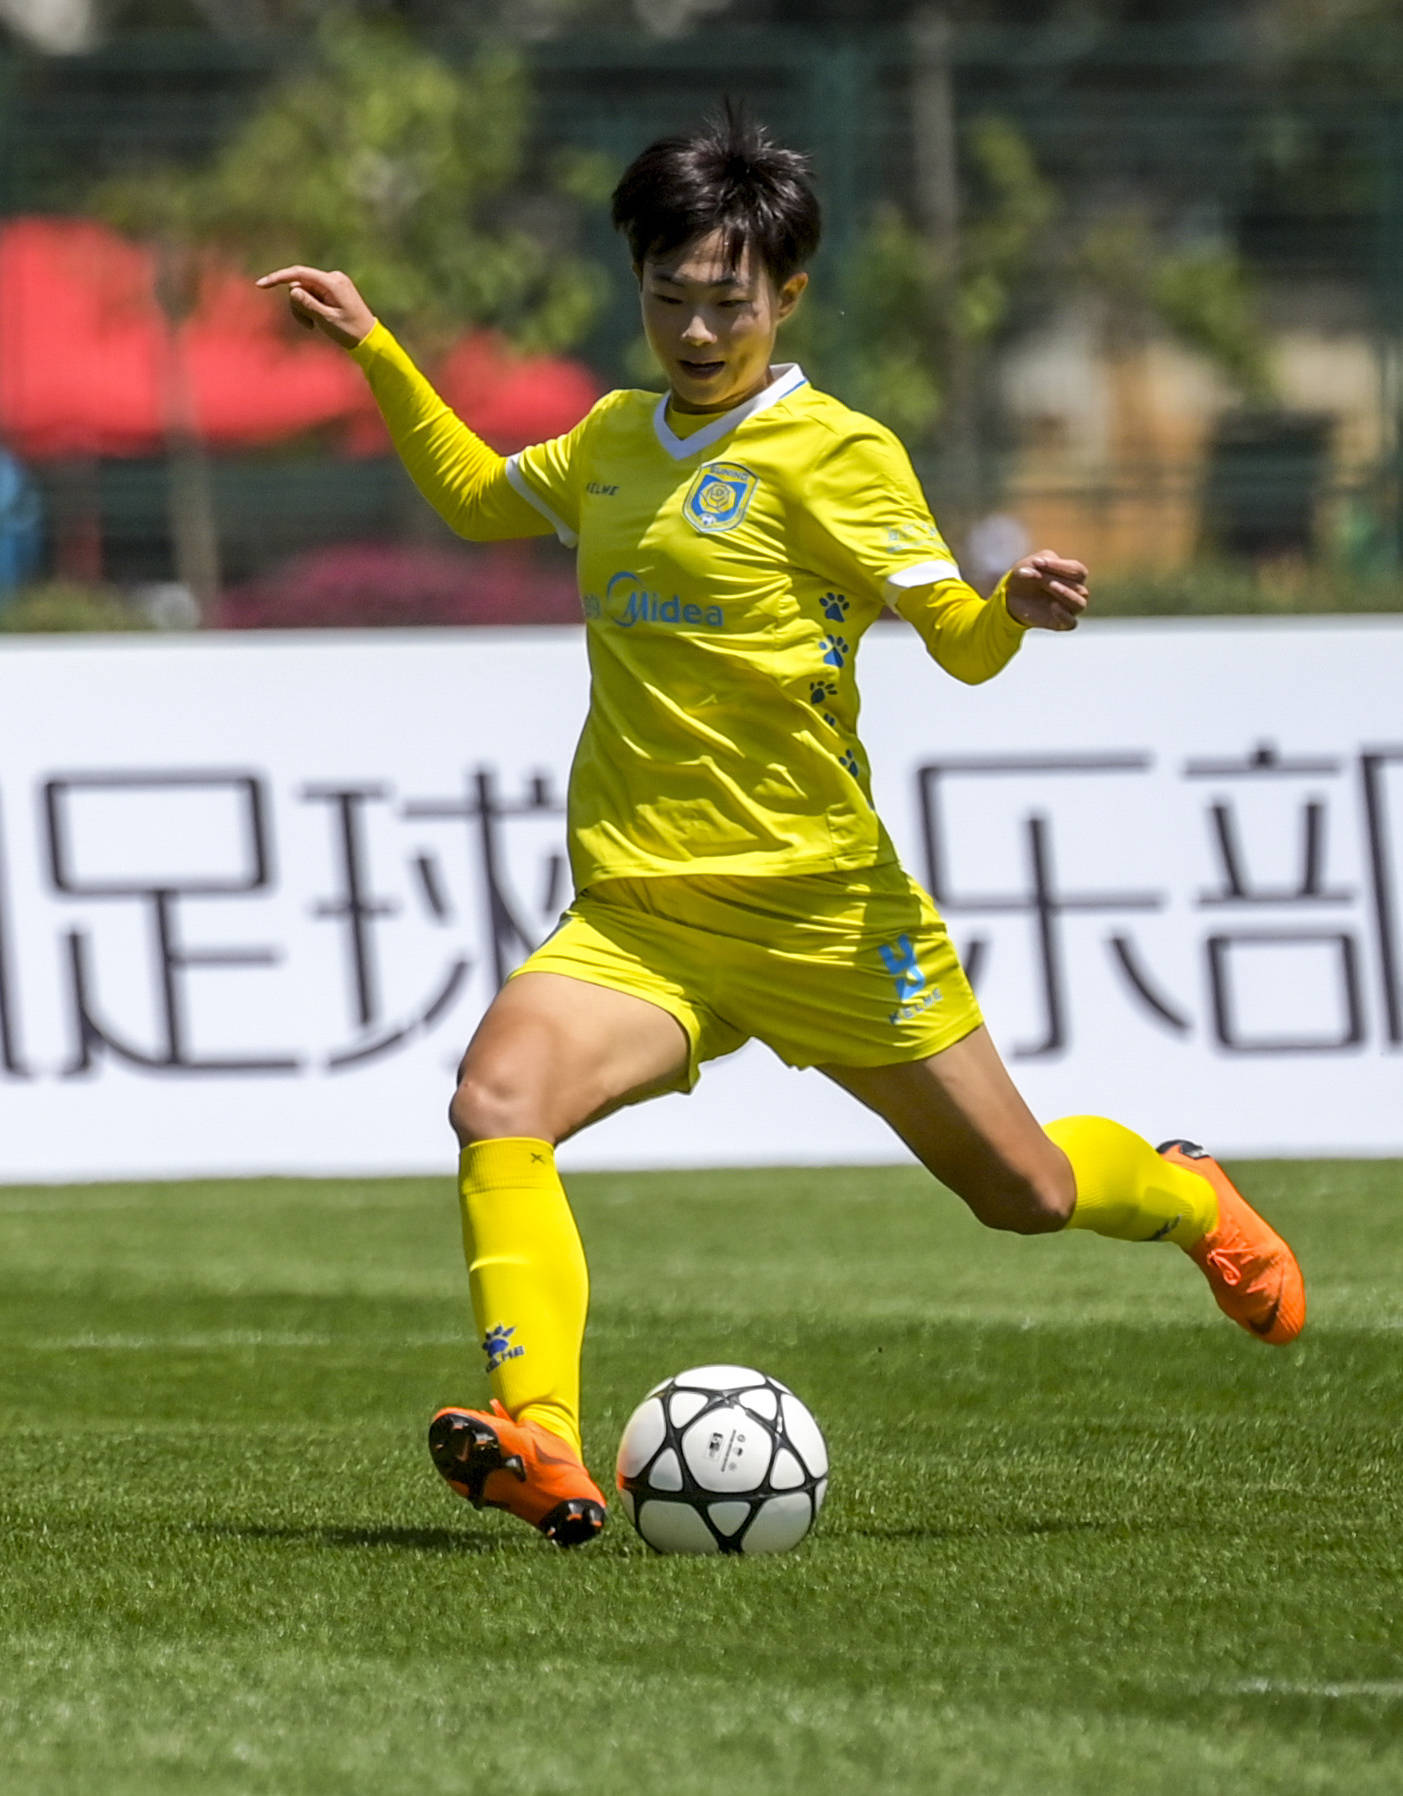 8月26日,江苏苏宁女足球员吴澄舒在比赛中射门得分.